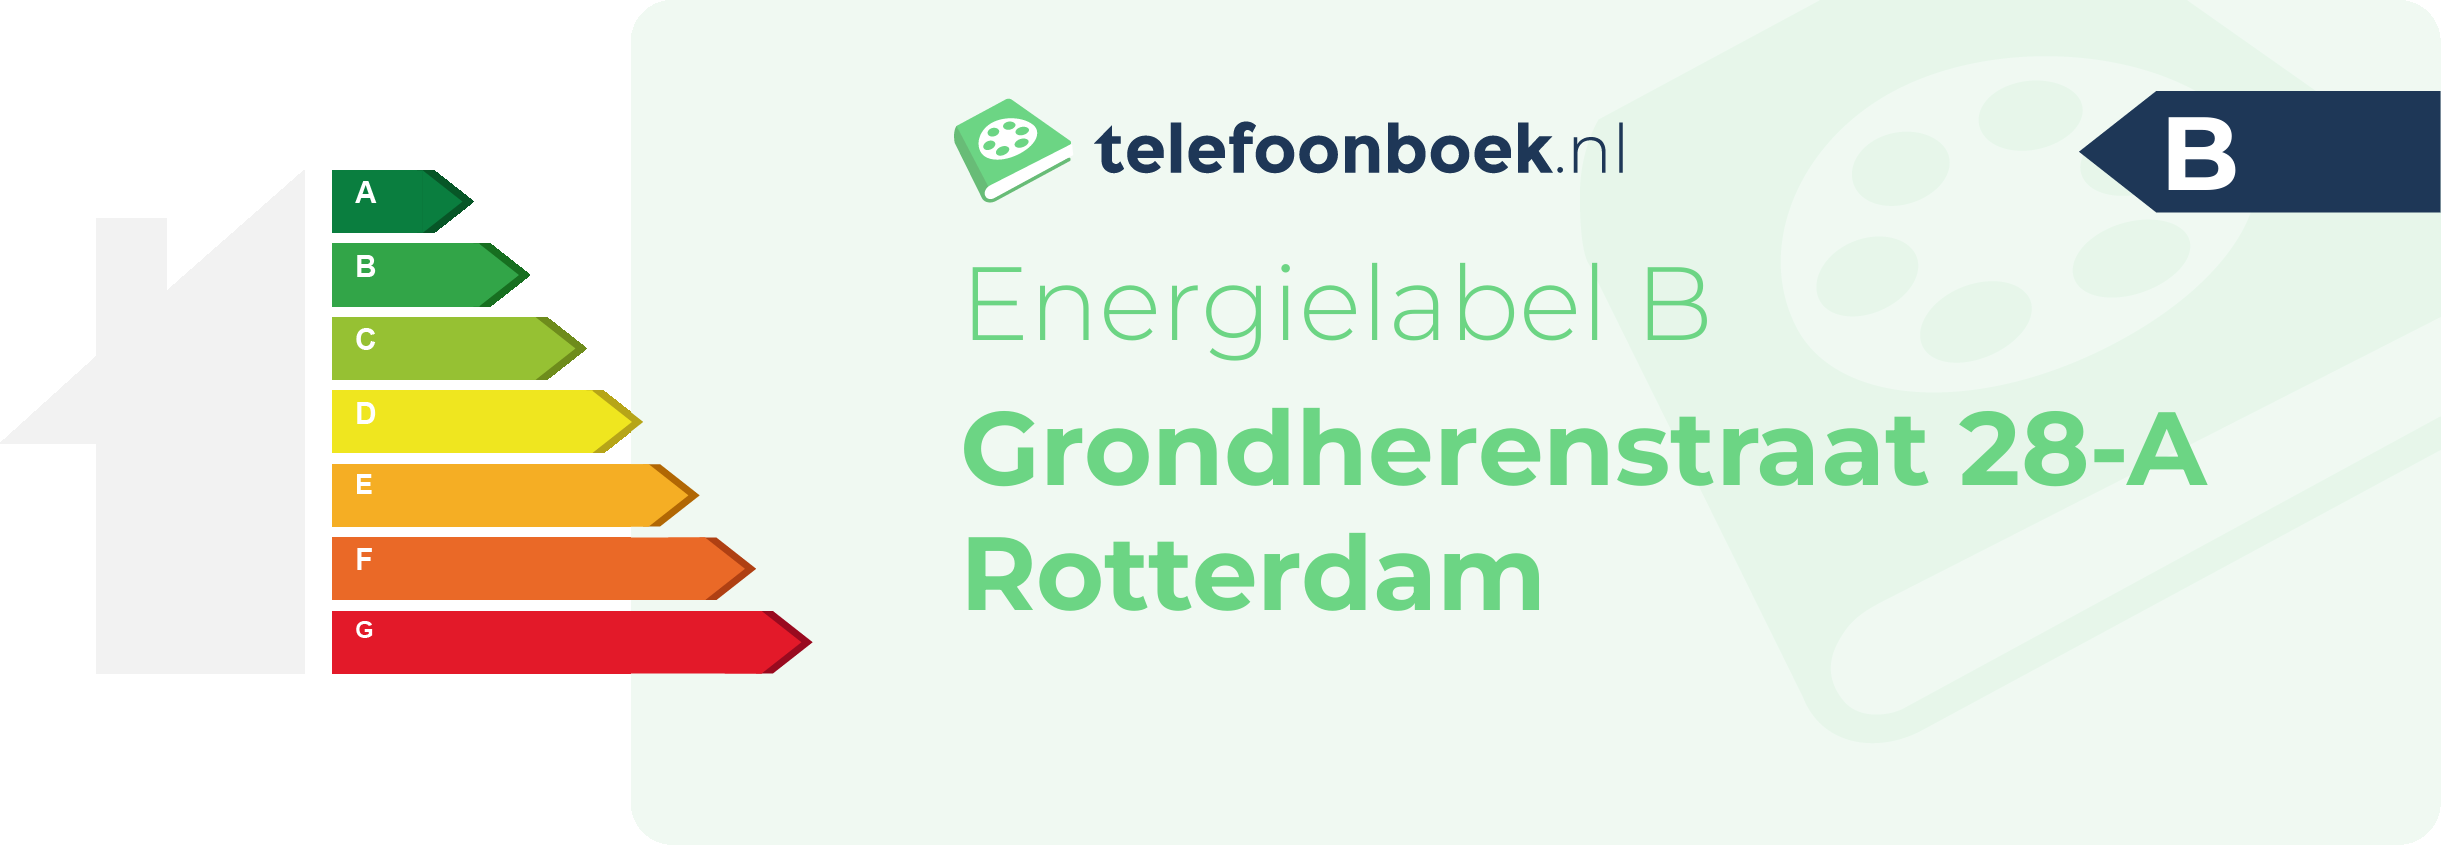 Energielabel Grondherenstraat 28-A Rotterdam